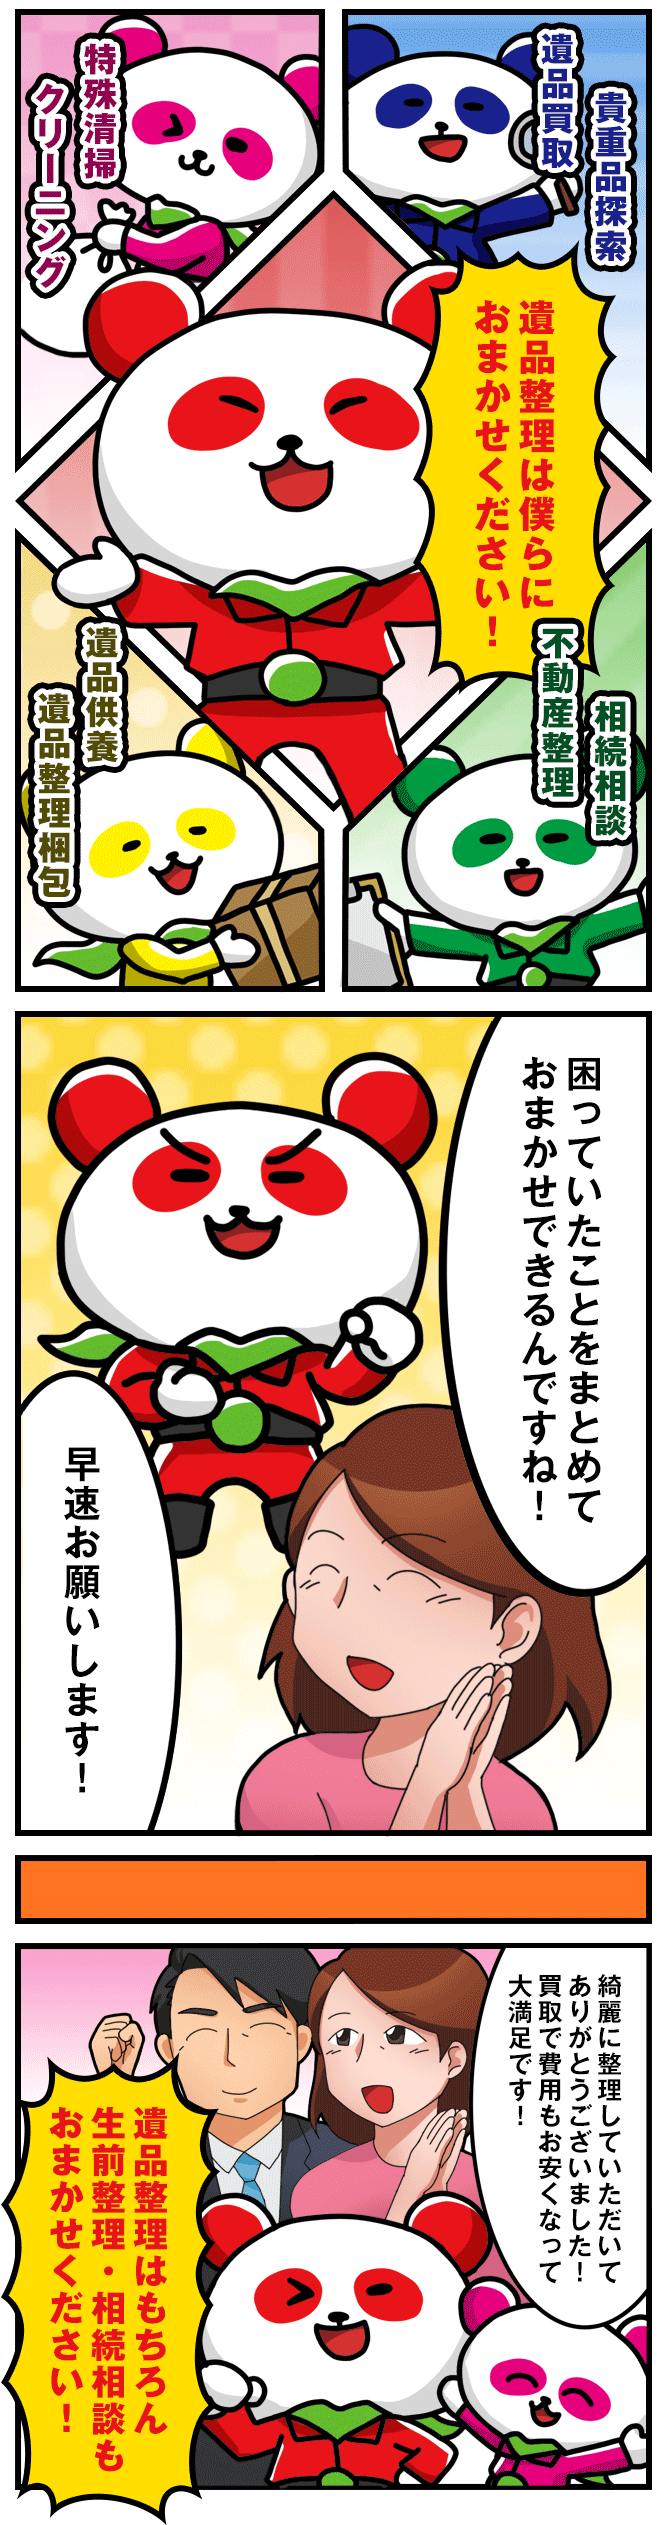 遺品整理の漫画 02